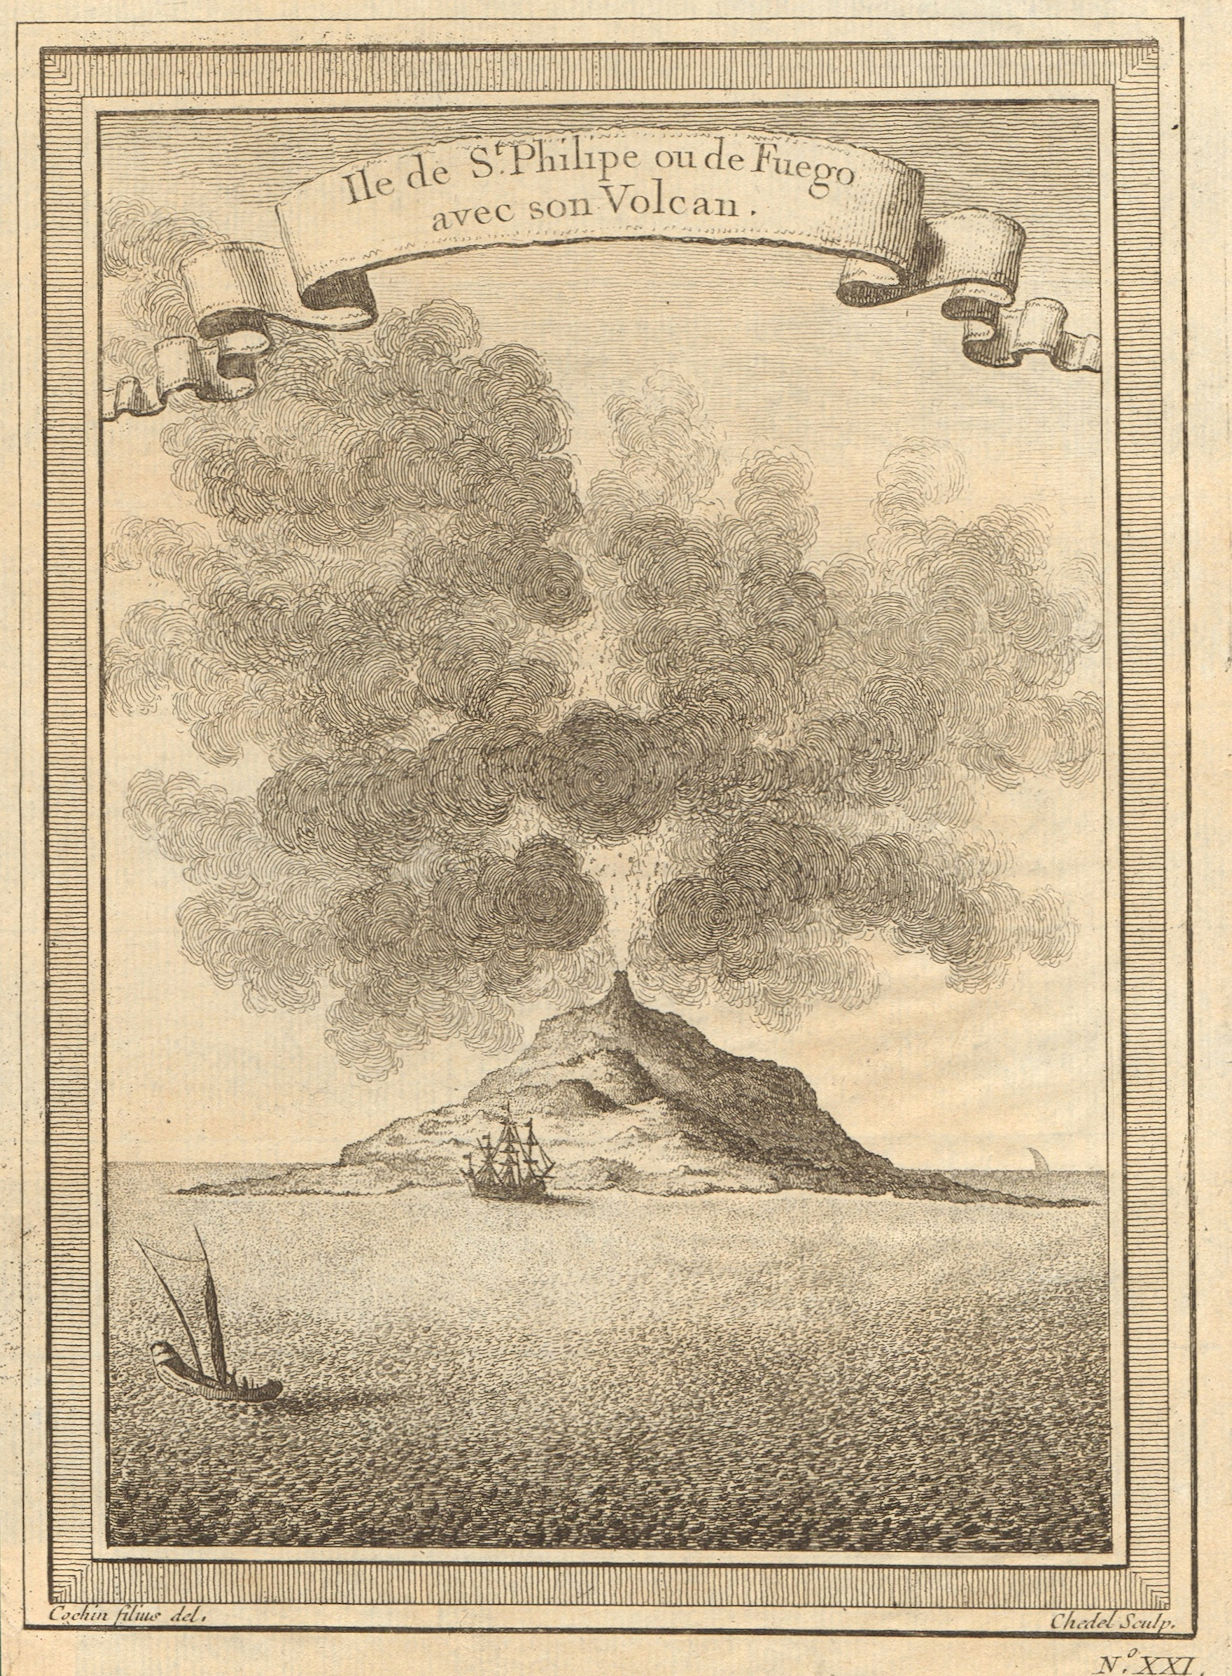 Associate Product Cabo/Cape Verde islands. Pico de Fogo. 'St. Philipe ou de Fuego'. Volcano 1746